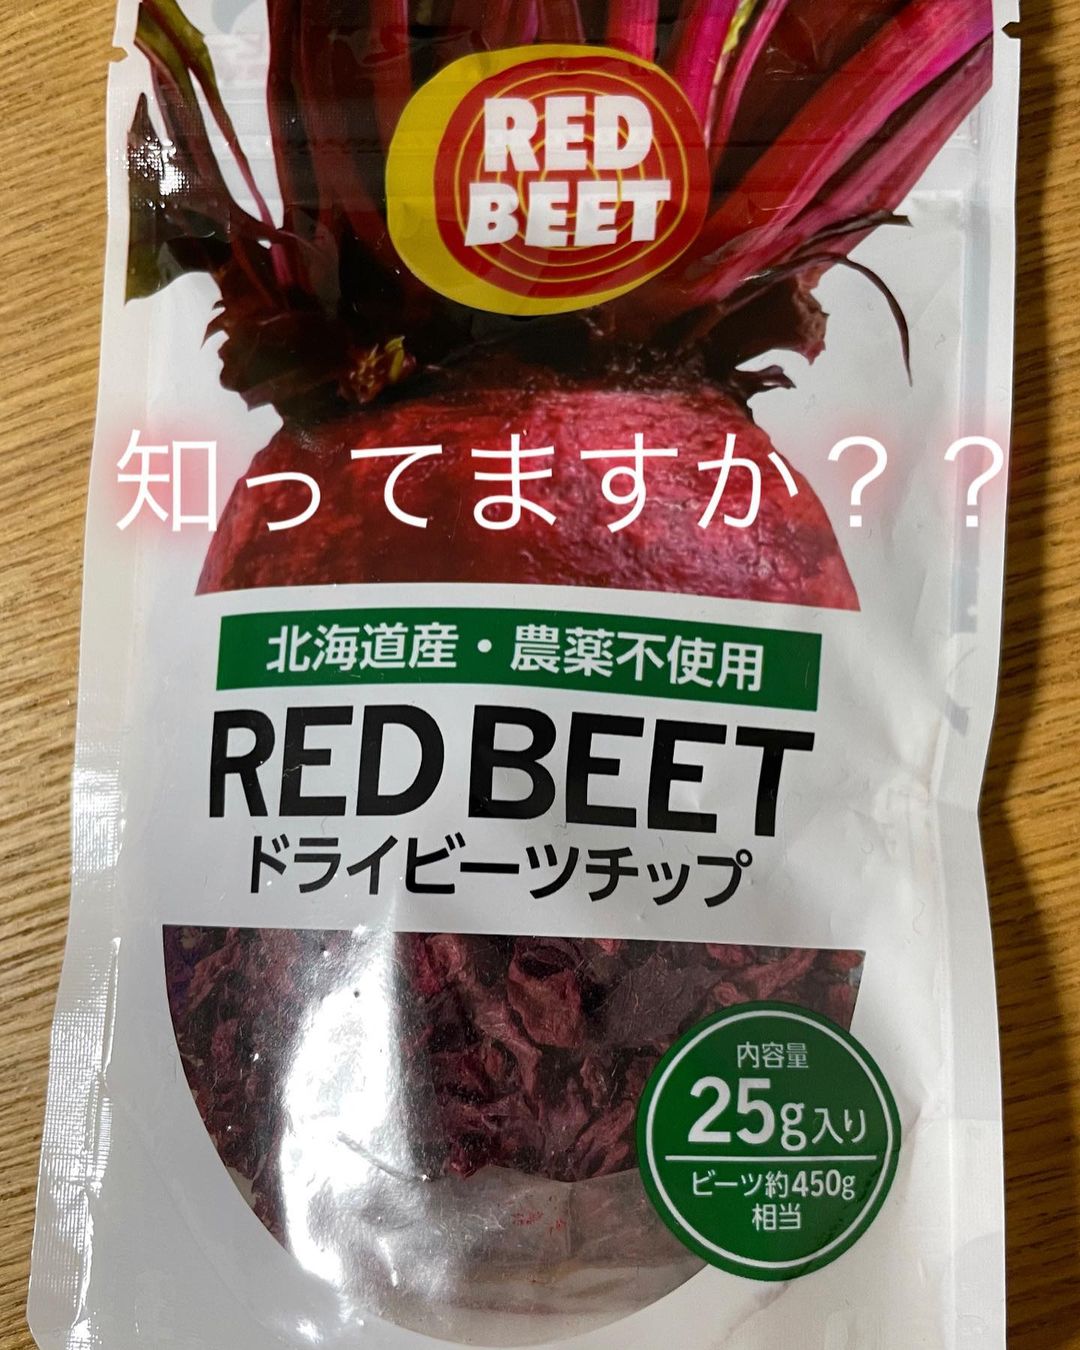 口コミ投稿：☆塩水港精糖株式会社様の【RED BEET ドライビーツチップ】をいただきましたので、ご…